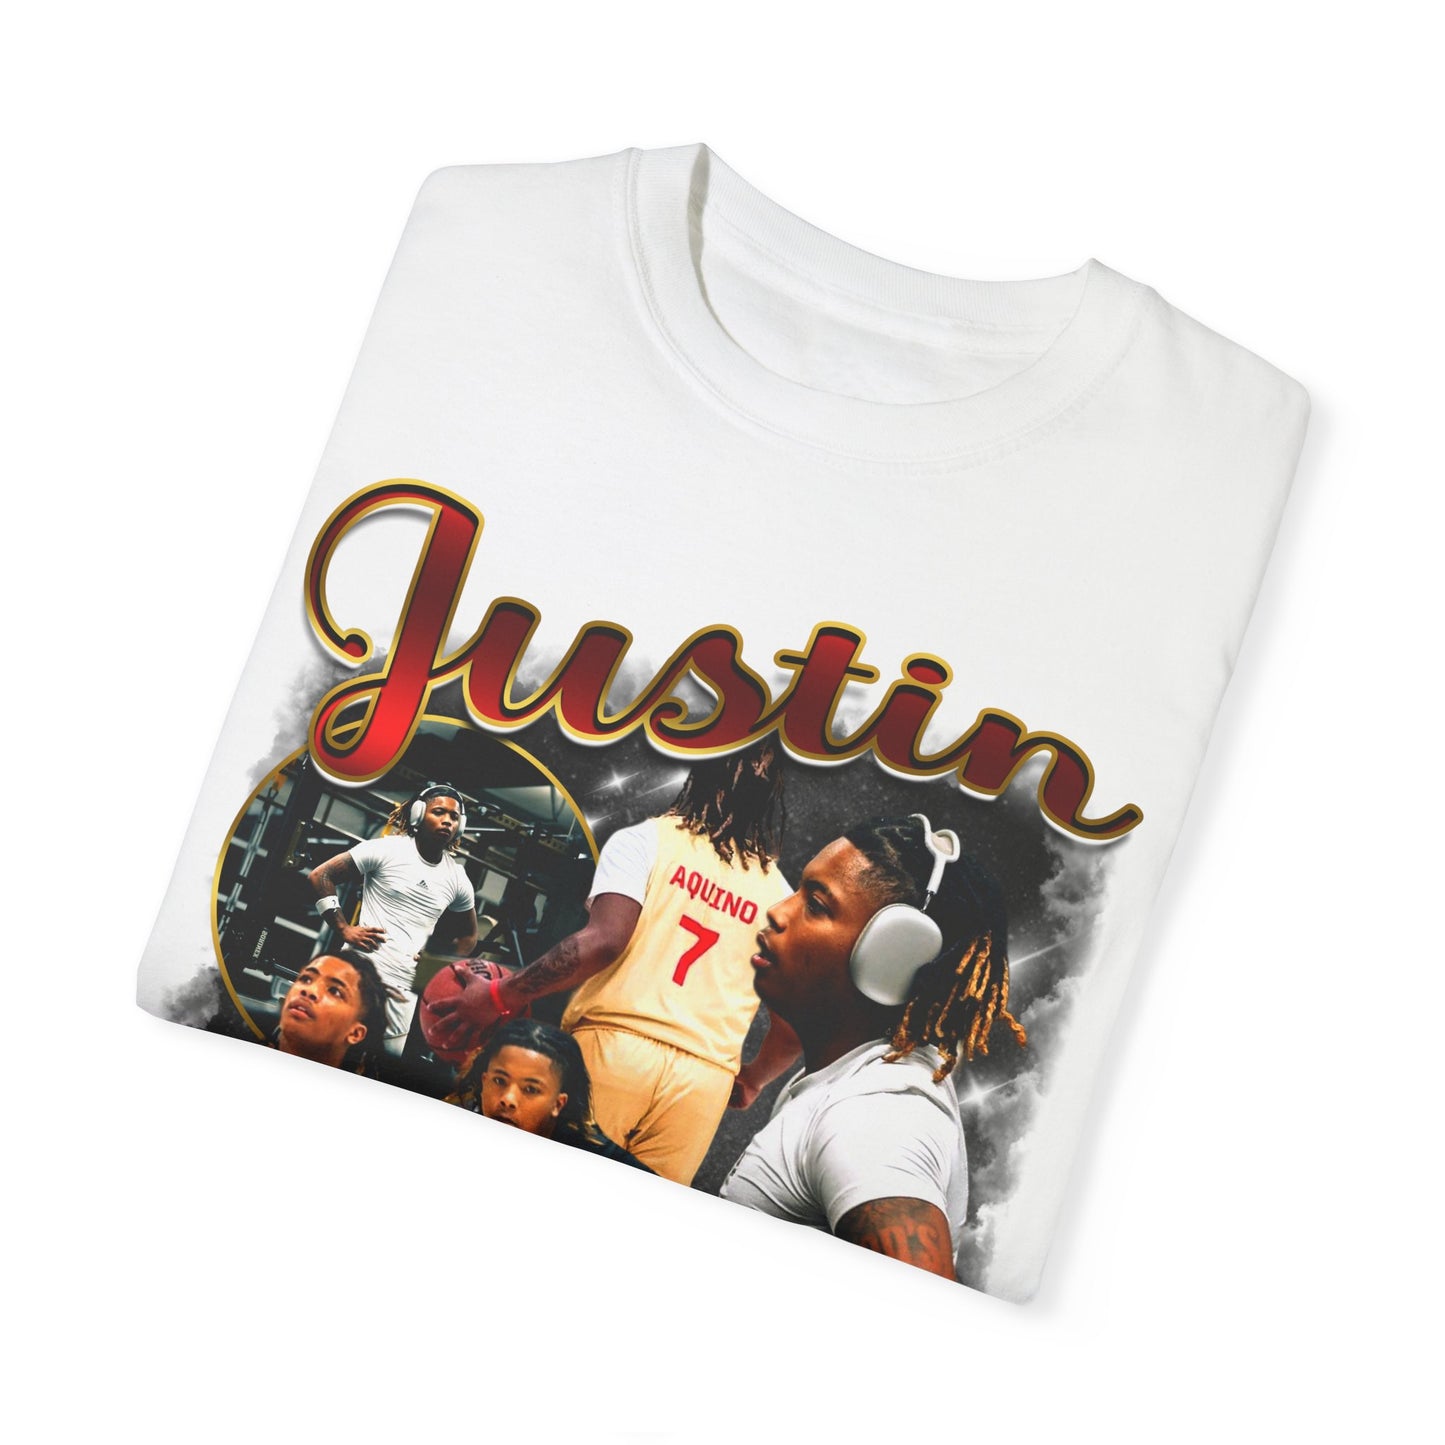 Justin Aquino Graphic Tee shirt